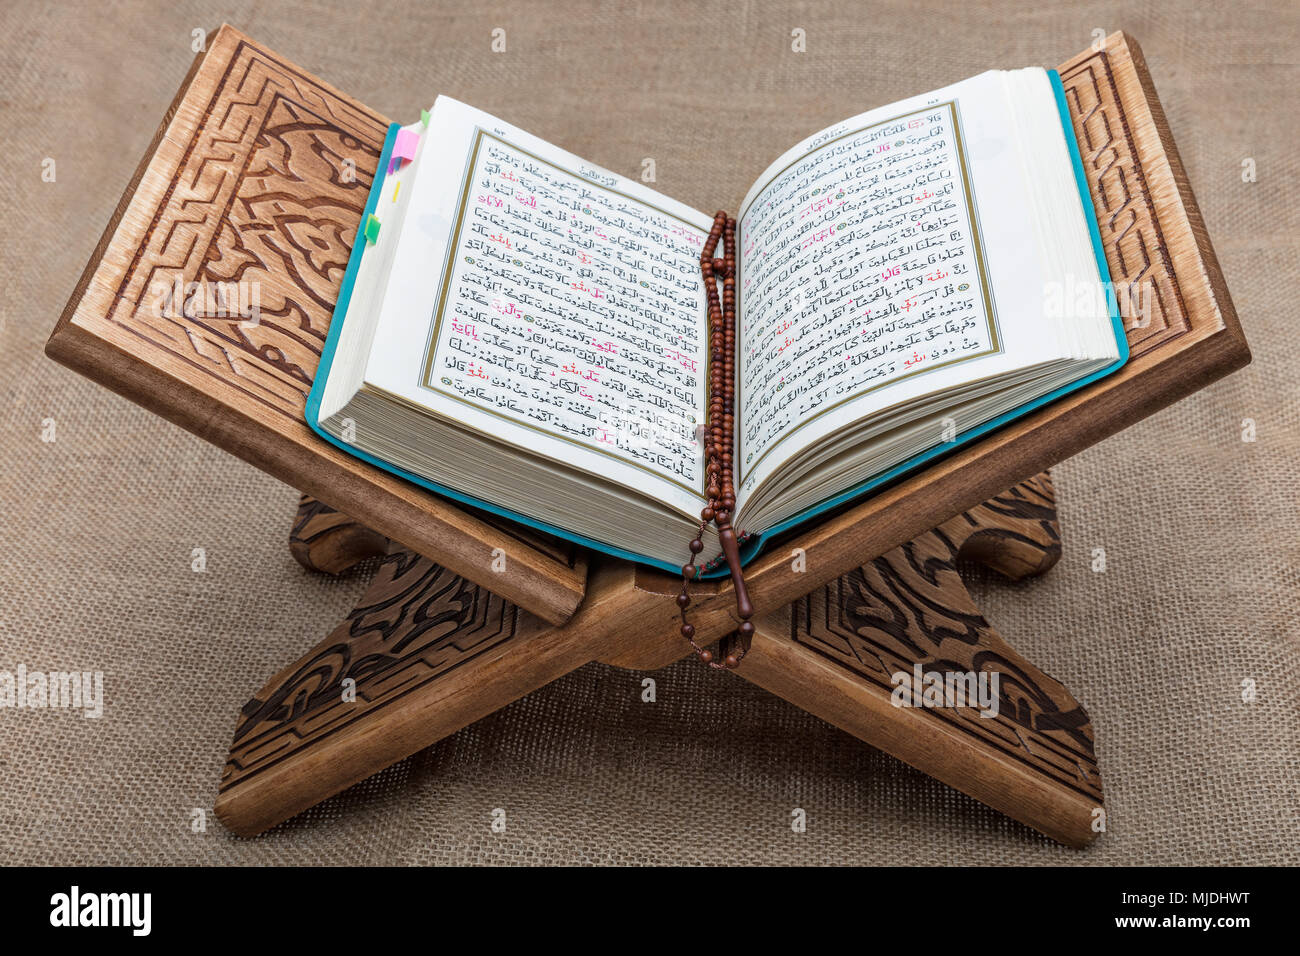 El Corán – Calle de libros